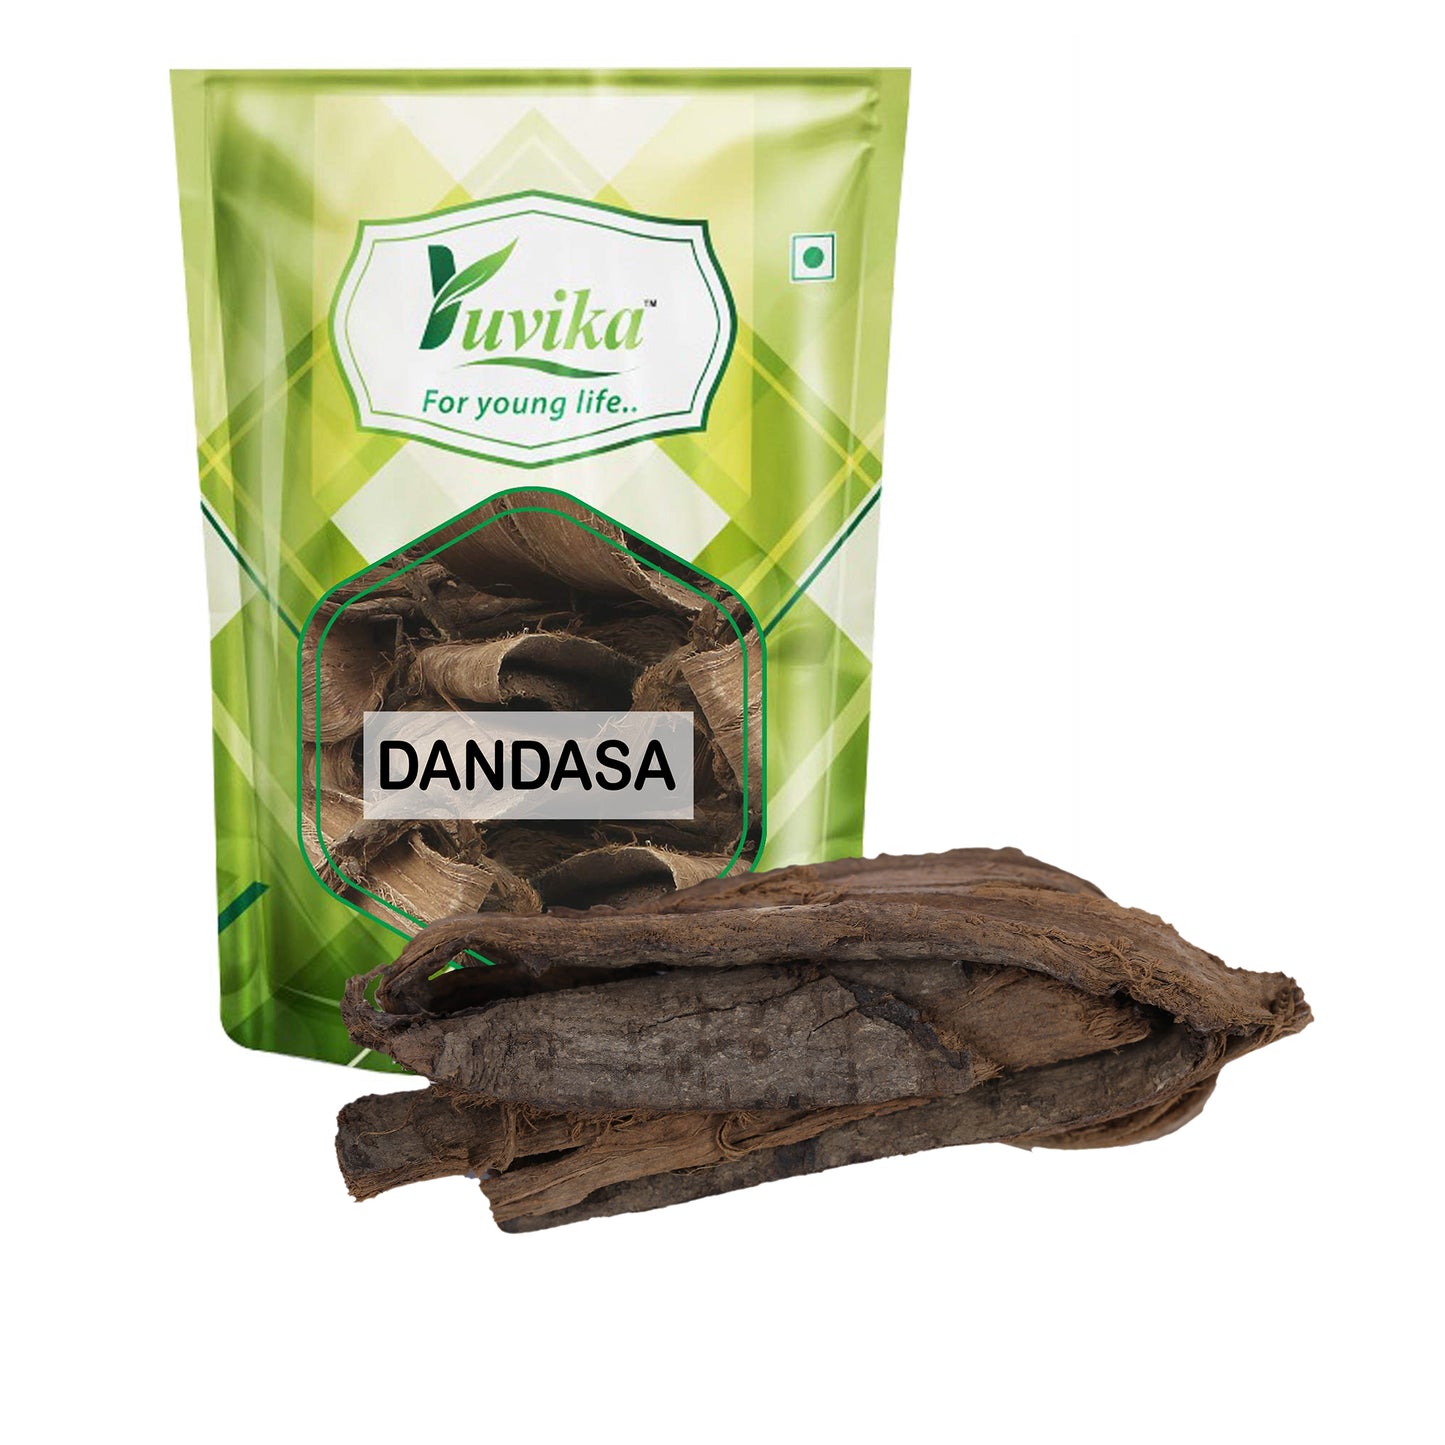 Dandasa - Datoon - Juglans - Walnut Tree Peel